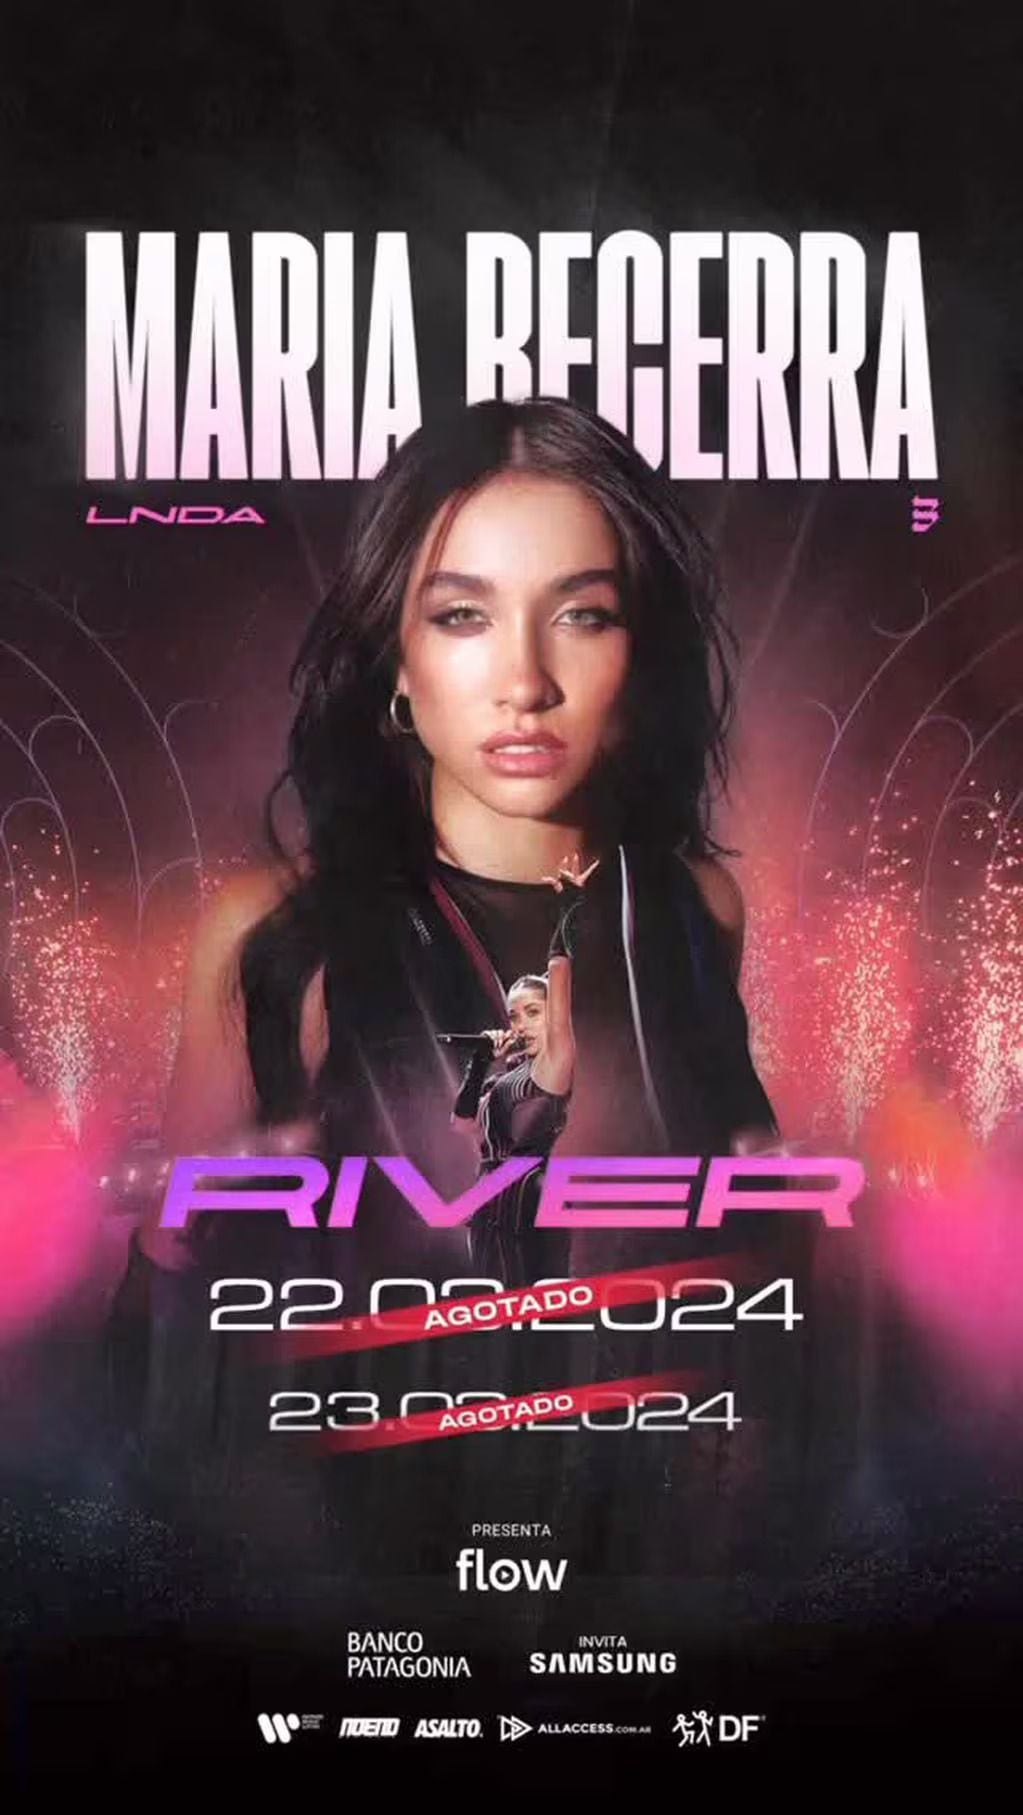 María Becerra se presenta en River el 22 y 23 de marzo. / Instagram